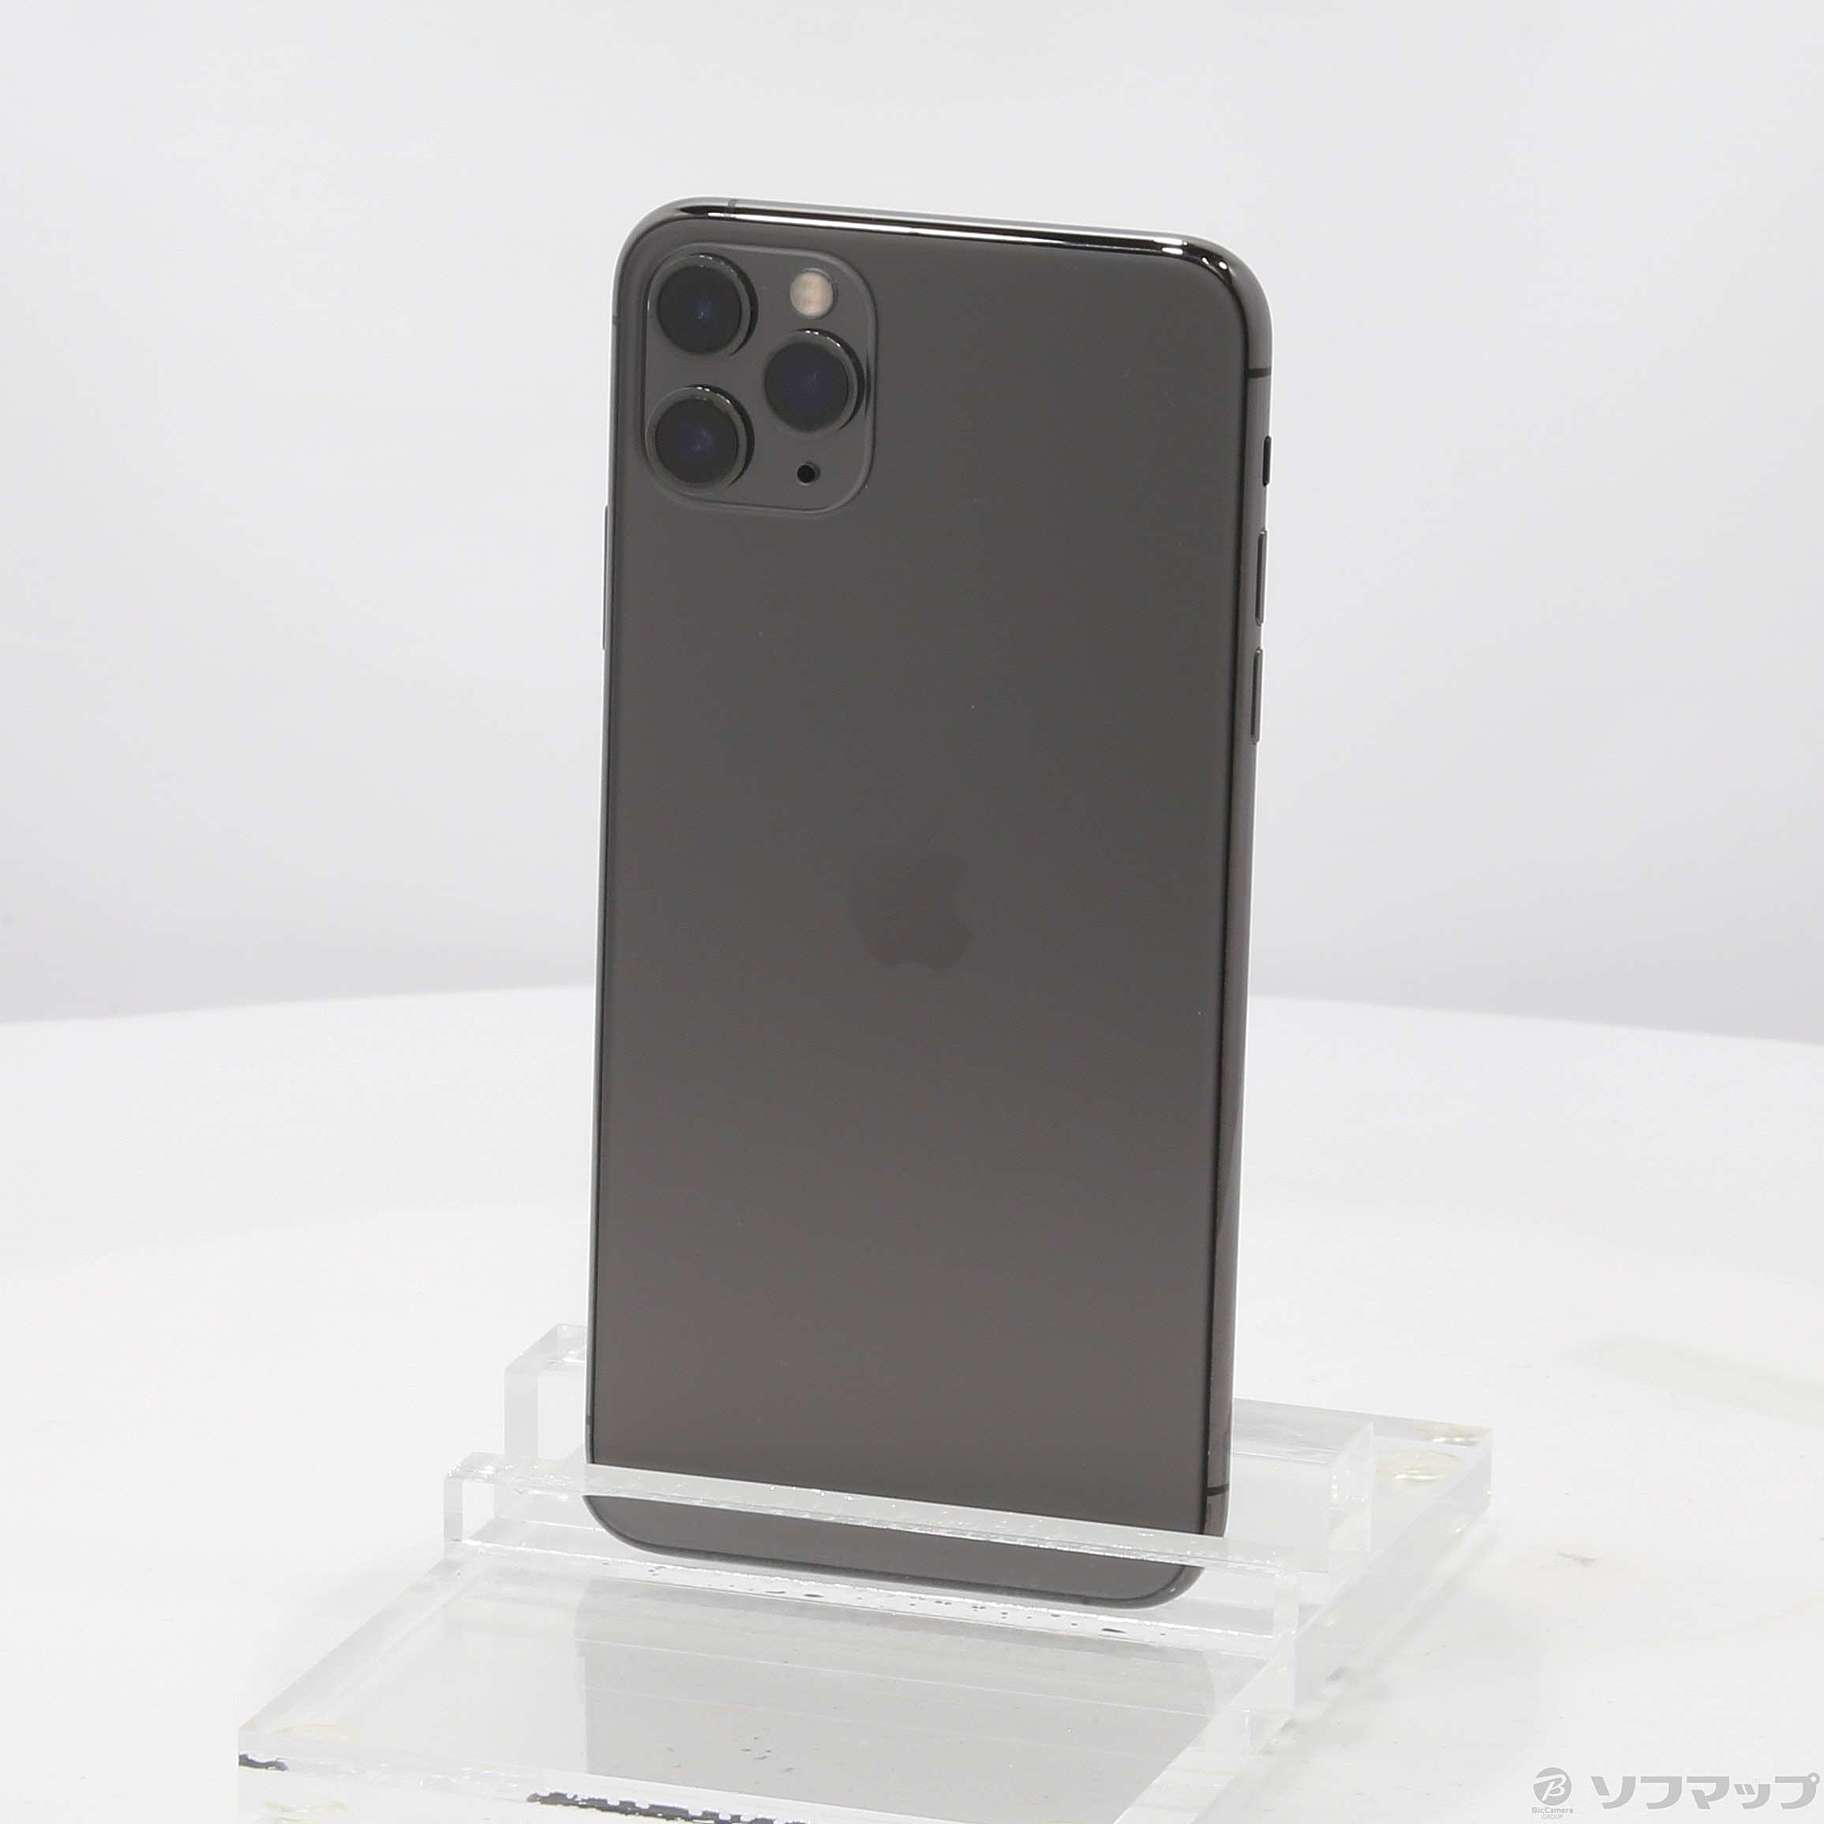 同梱不可】 iPhone11 Pro 256GB スペースグレイ【国内版SIMフリー